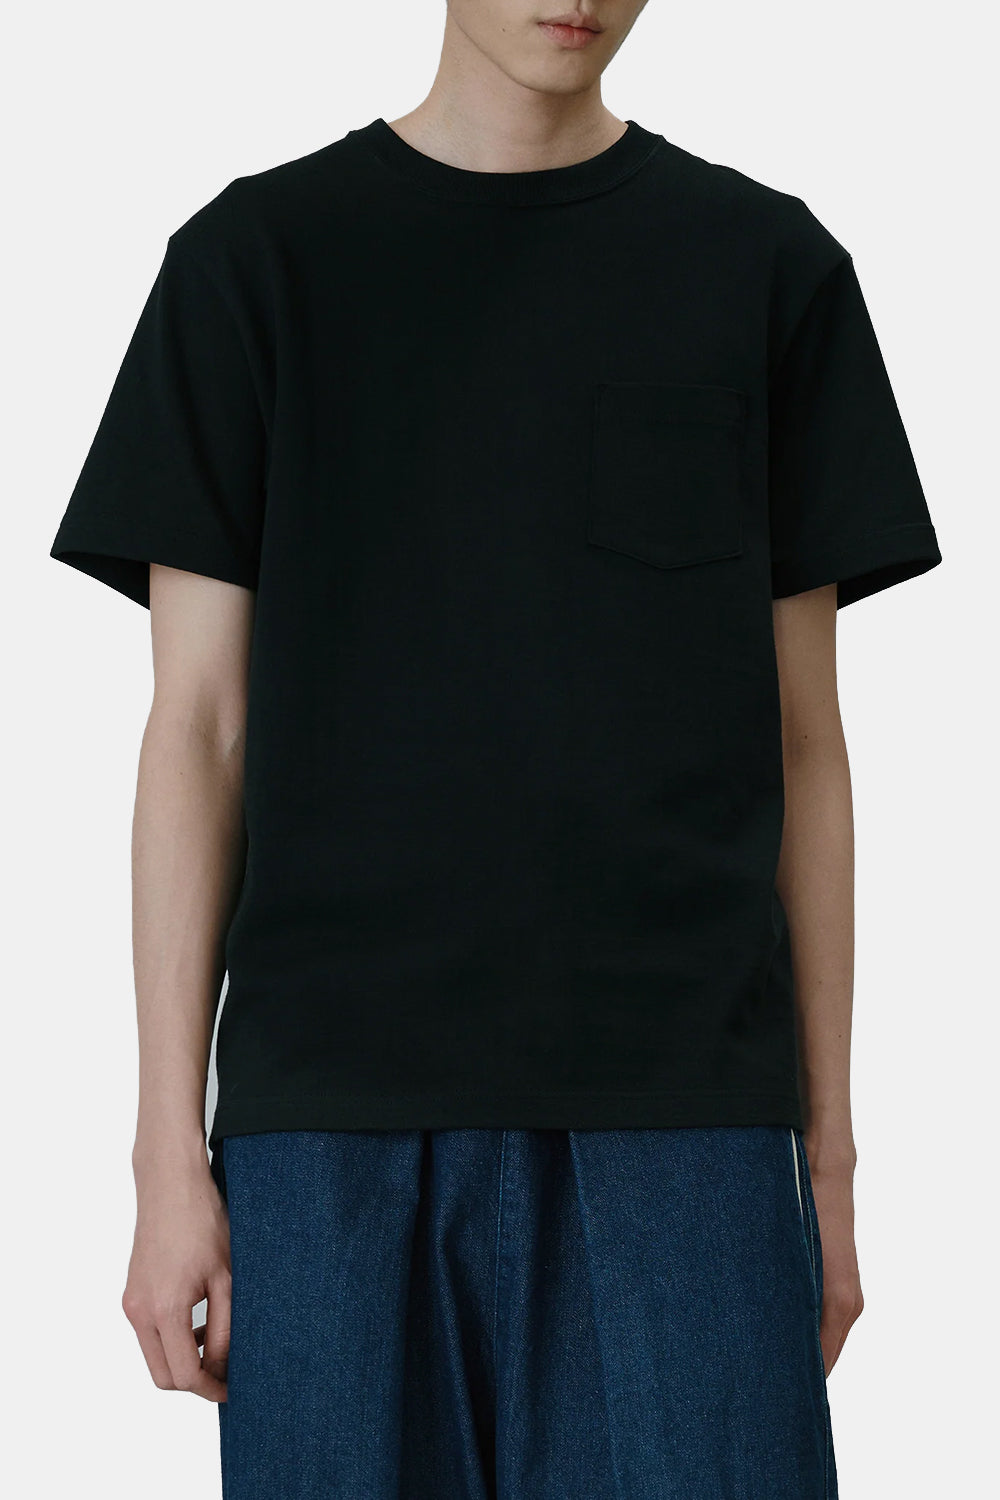 United Athle Japan Made Standard Fit Pocket T-shirt (Black)